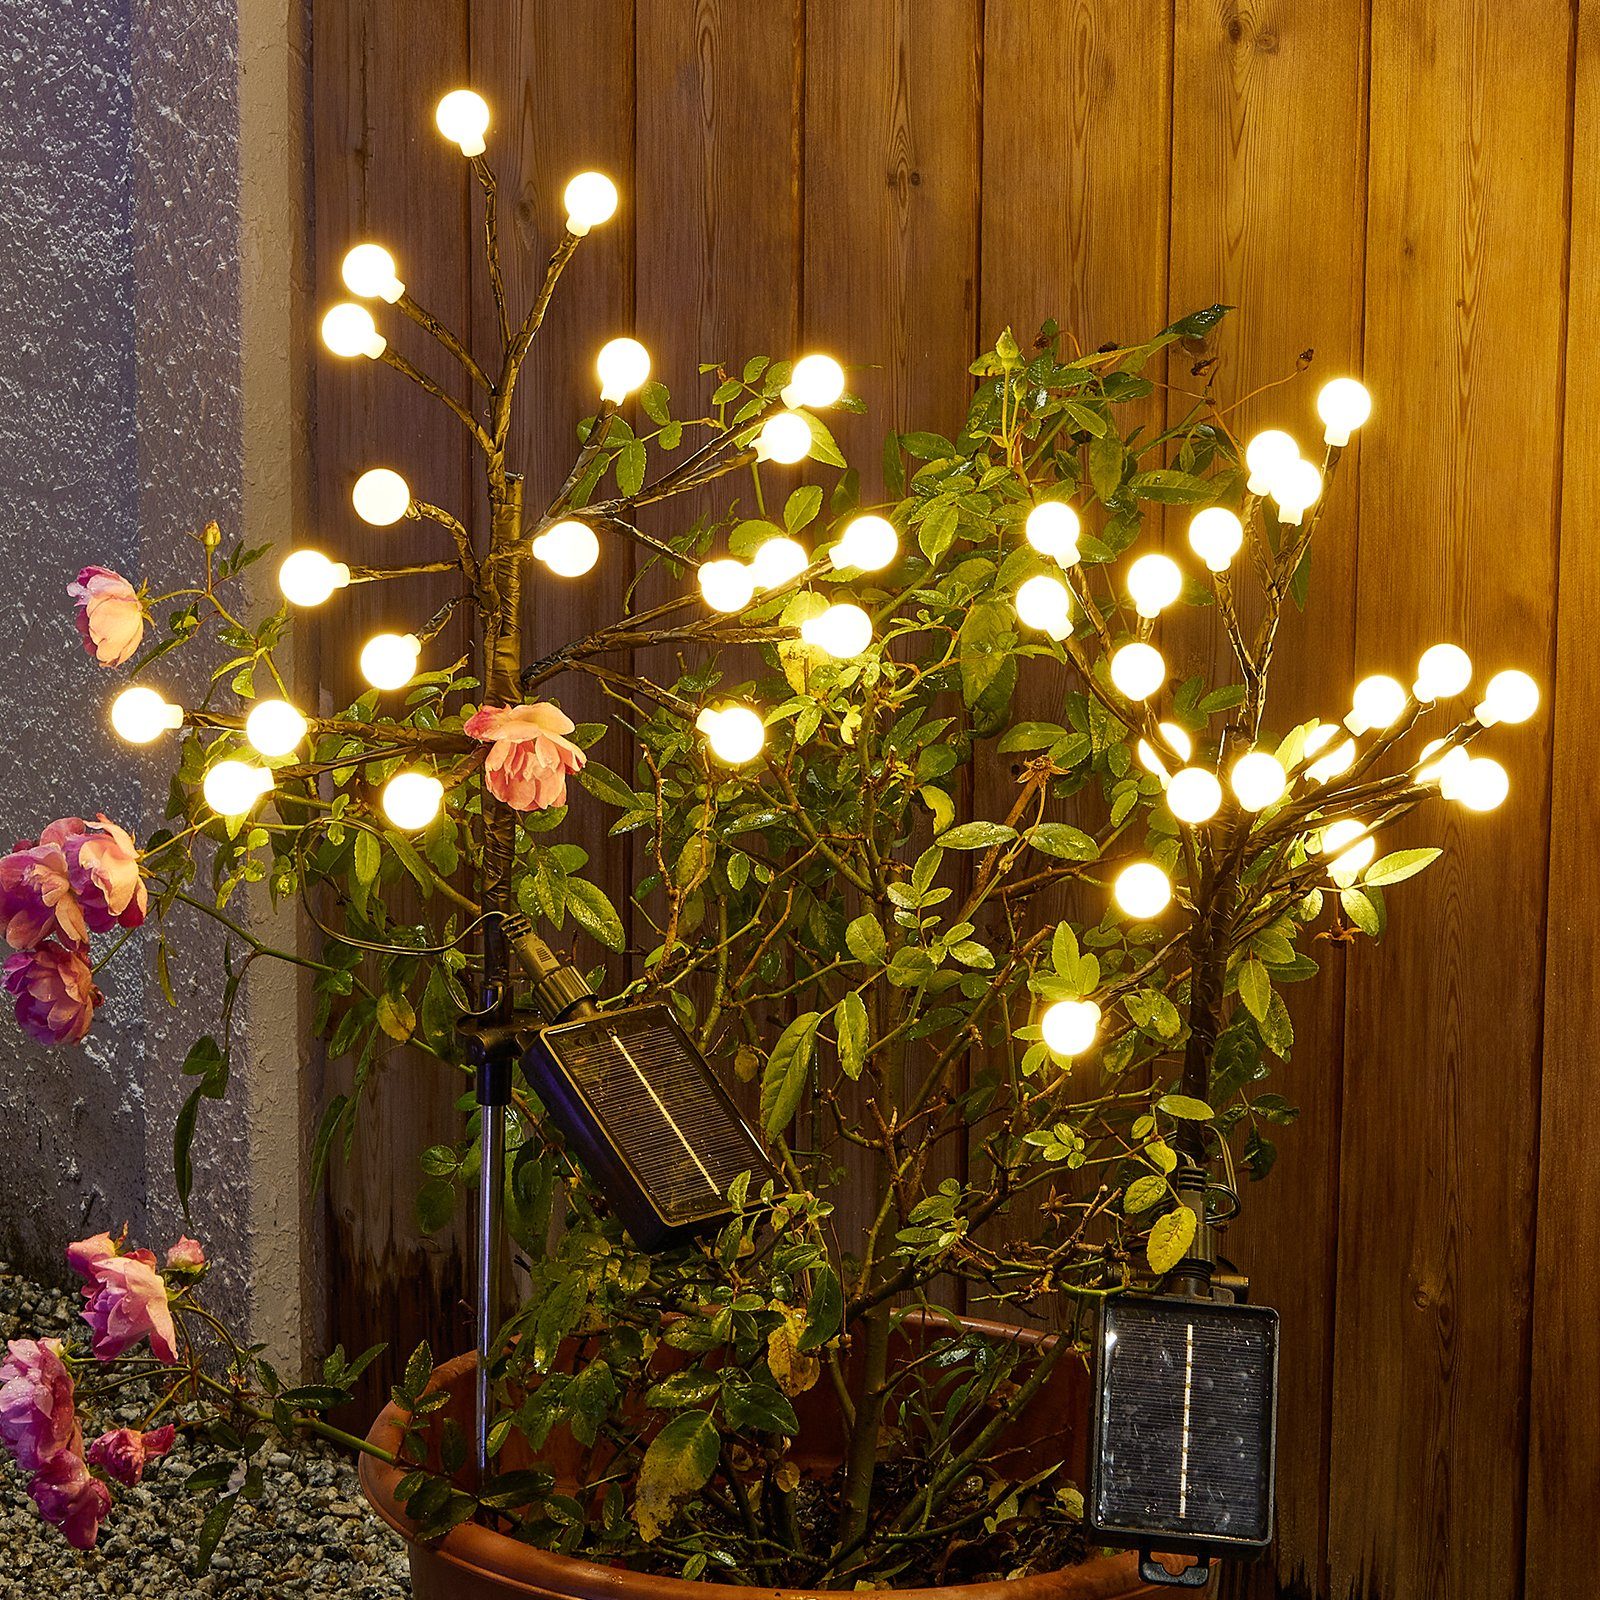 Sunicol LED Gartenleuchte Solar Garten Lichter mit Fernbedienung, IP65 Wasserdicht, 8 Modi, für Höfen, Gärten, Parks, Rasenflächen, Tanzfläche undGehwegen Warmweiß